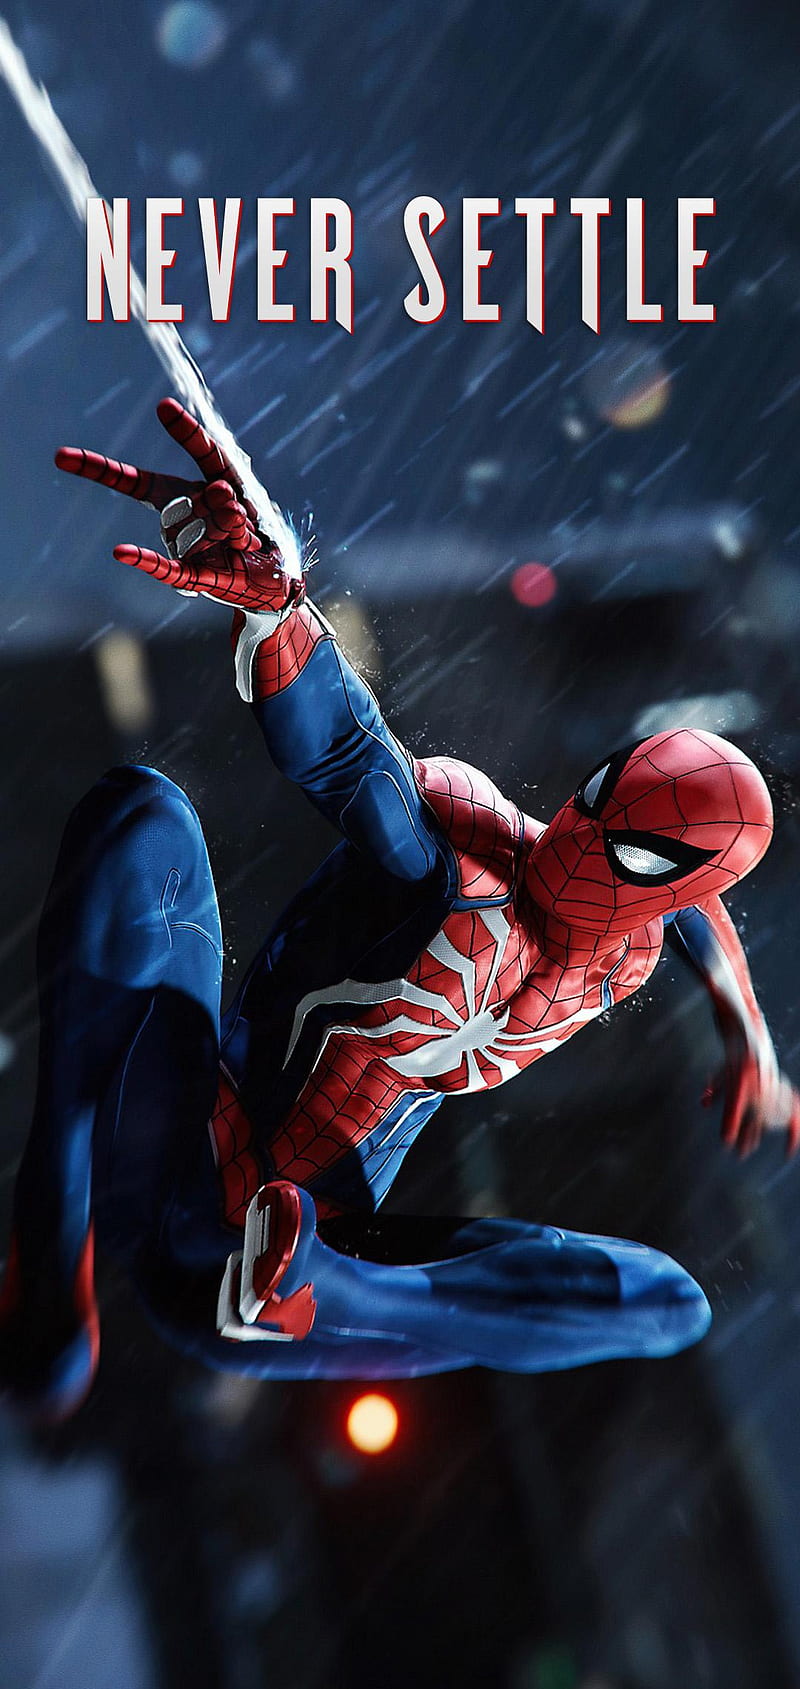 Spiderman, oneplus, oneplus never settle, never settle, spiderman homecoming, game, ps4, marvel, superhero, avenger, HD phone wallpaper